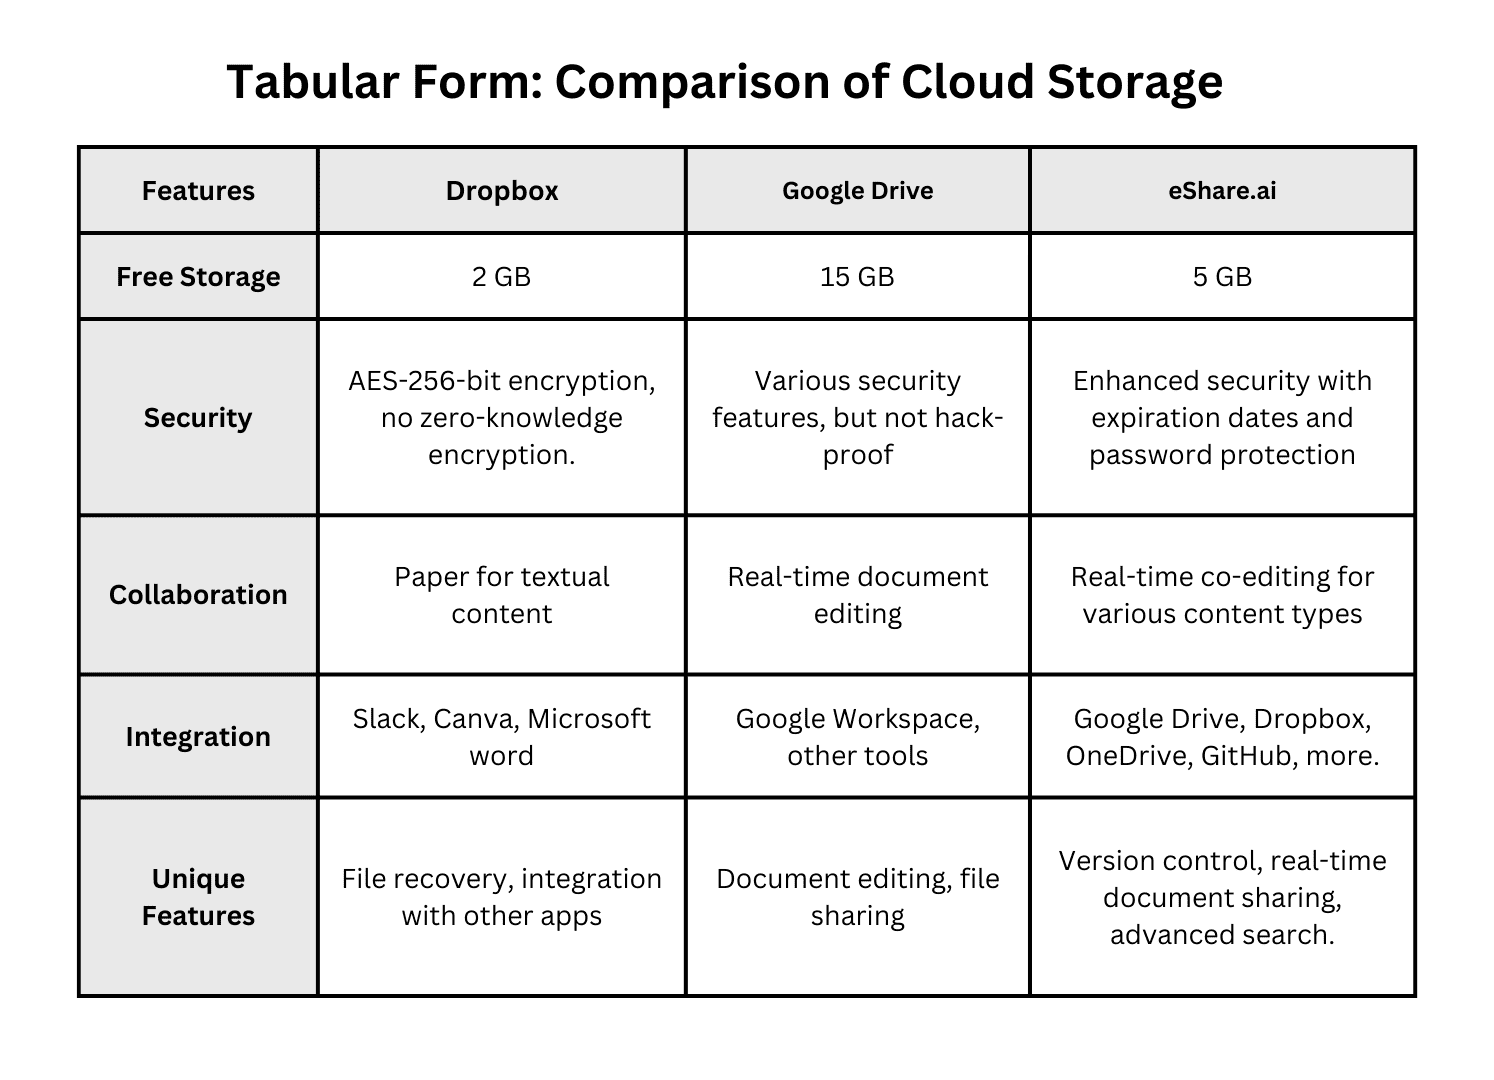 Comparison of Cloud Storage